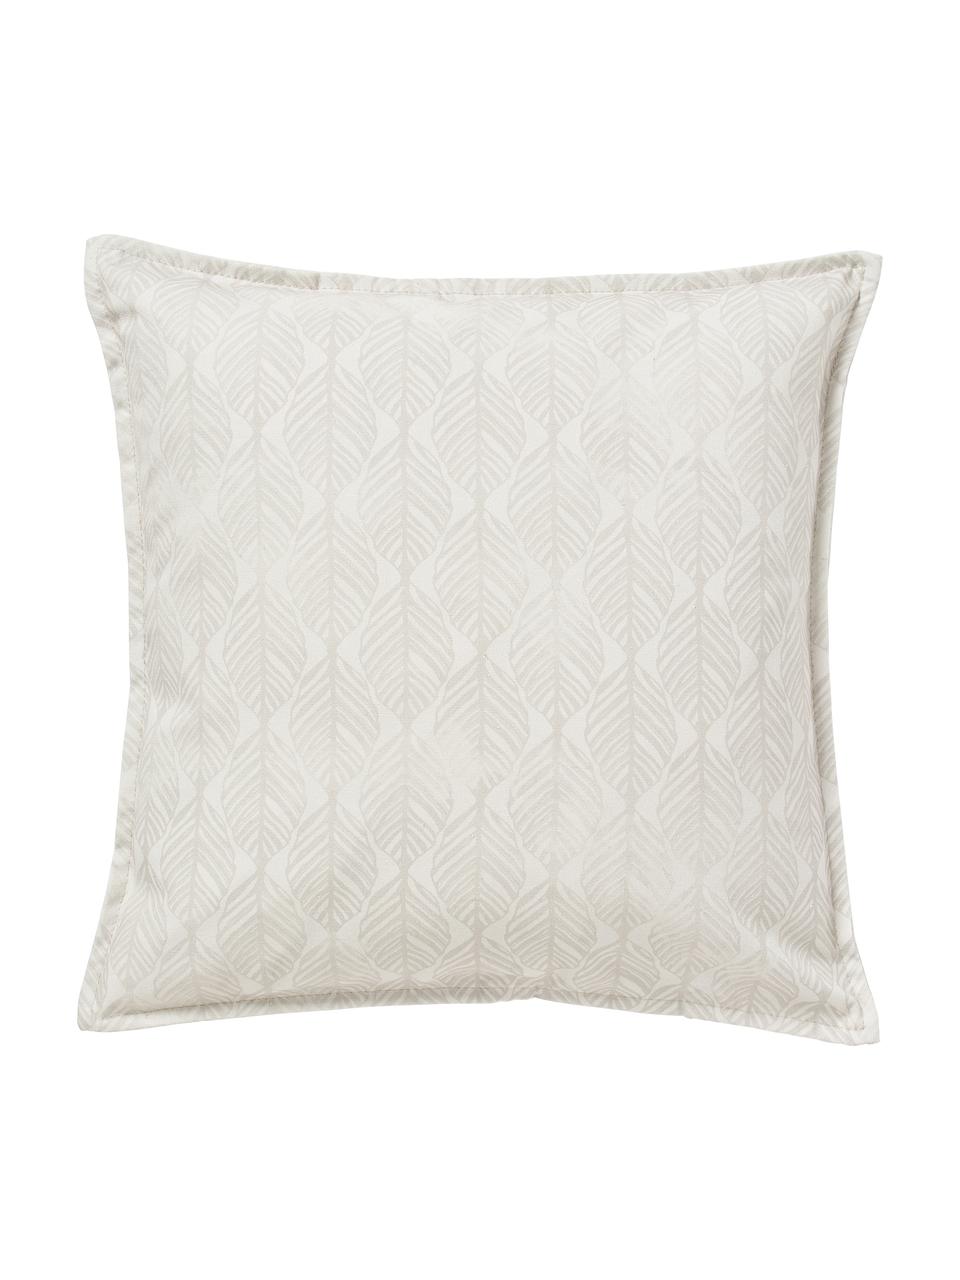 Kissenhüllen Armanda mit grafischem Muster, 2er-Set, 80 % Polyester, 20 % Baumwolle, Beigetöne, B 45 x L 45 cm